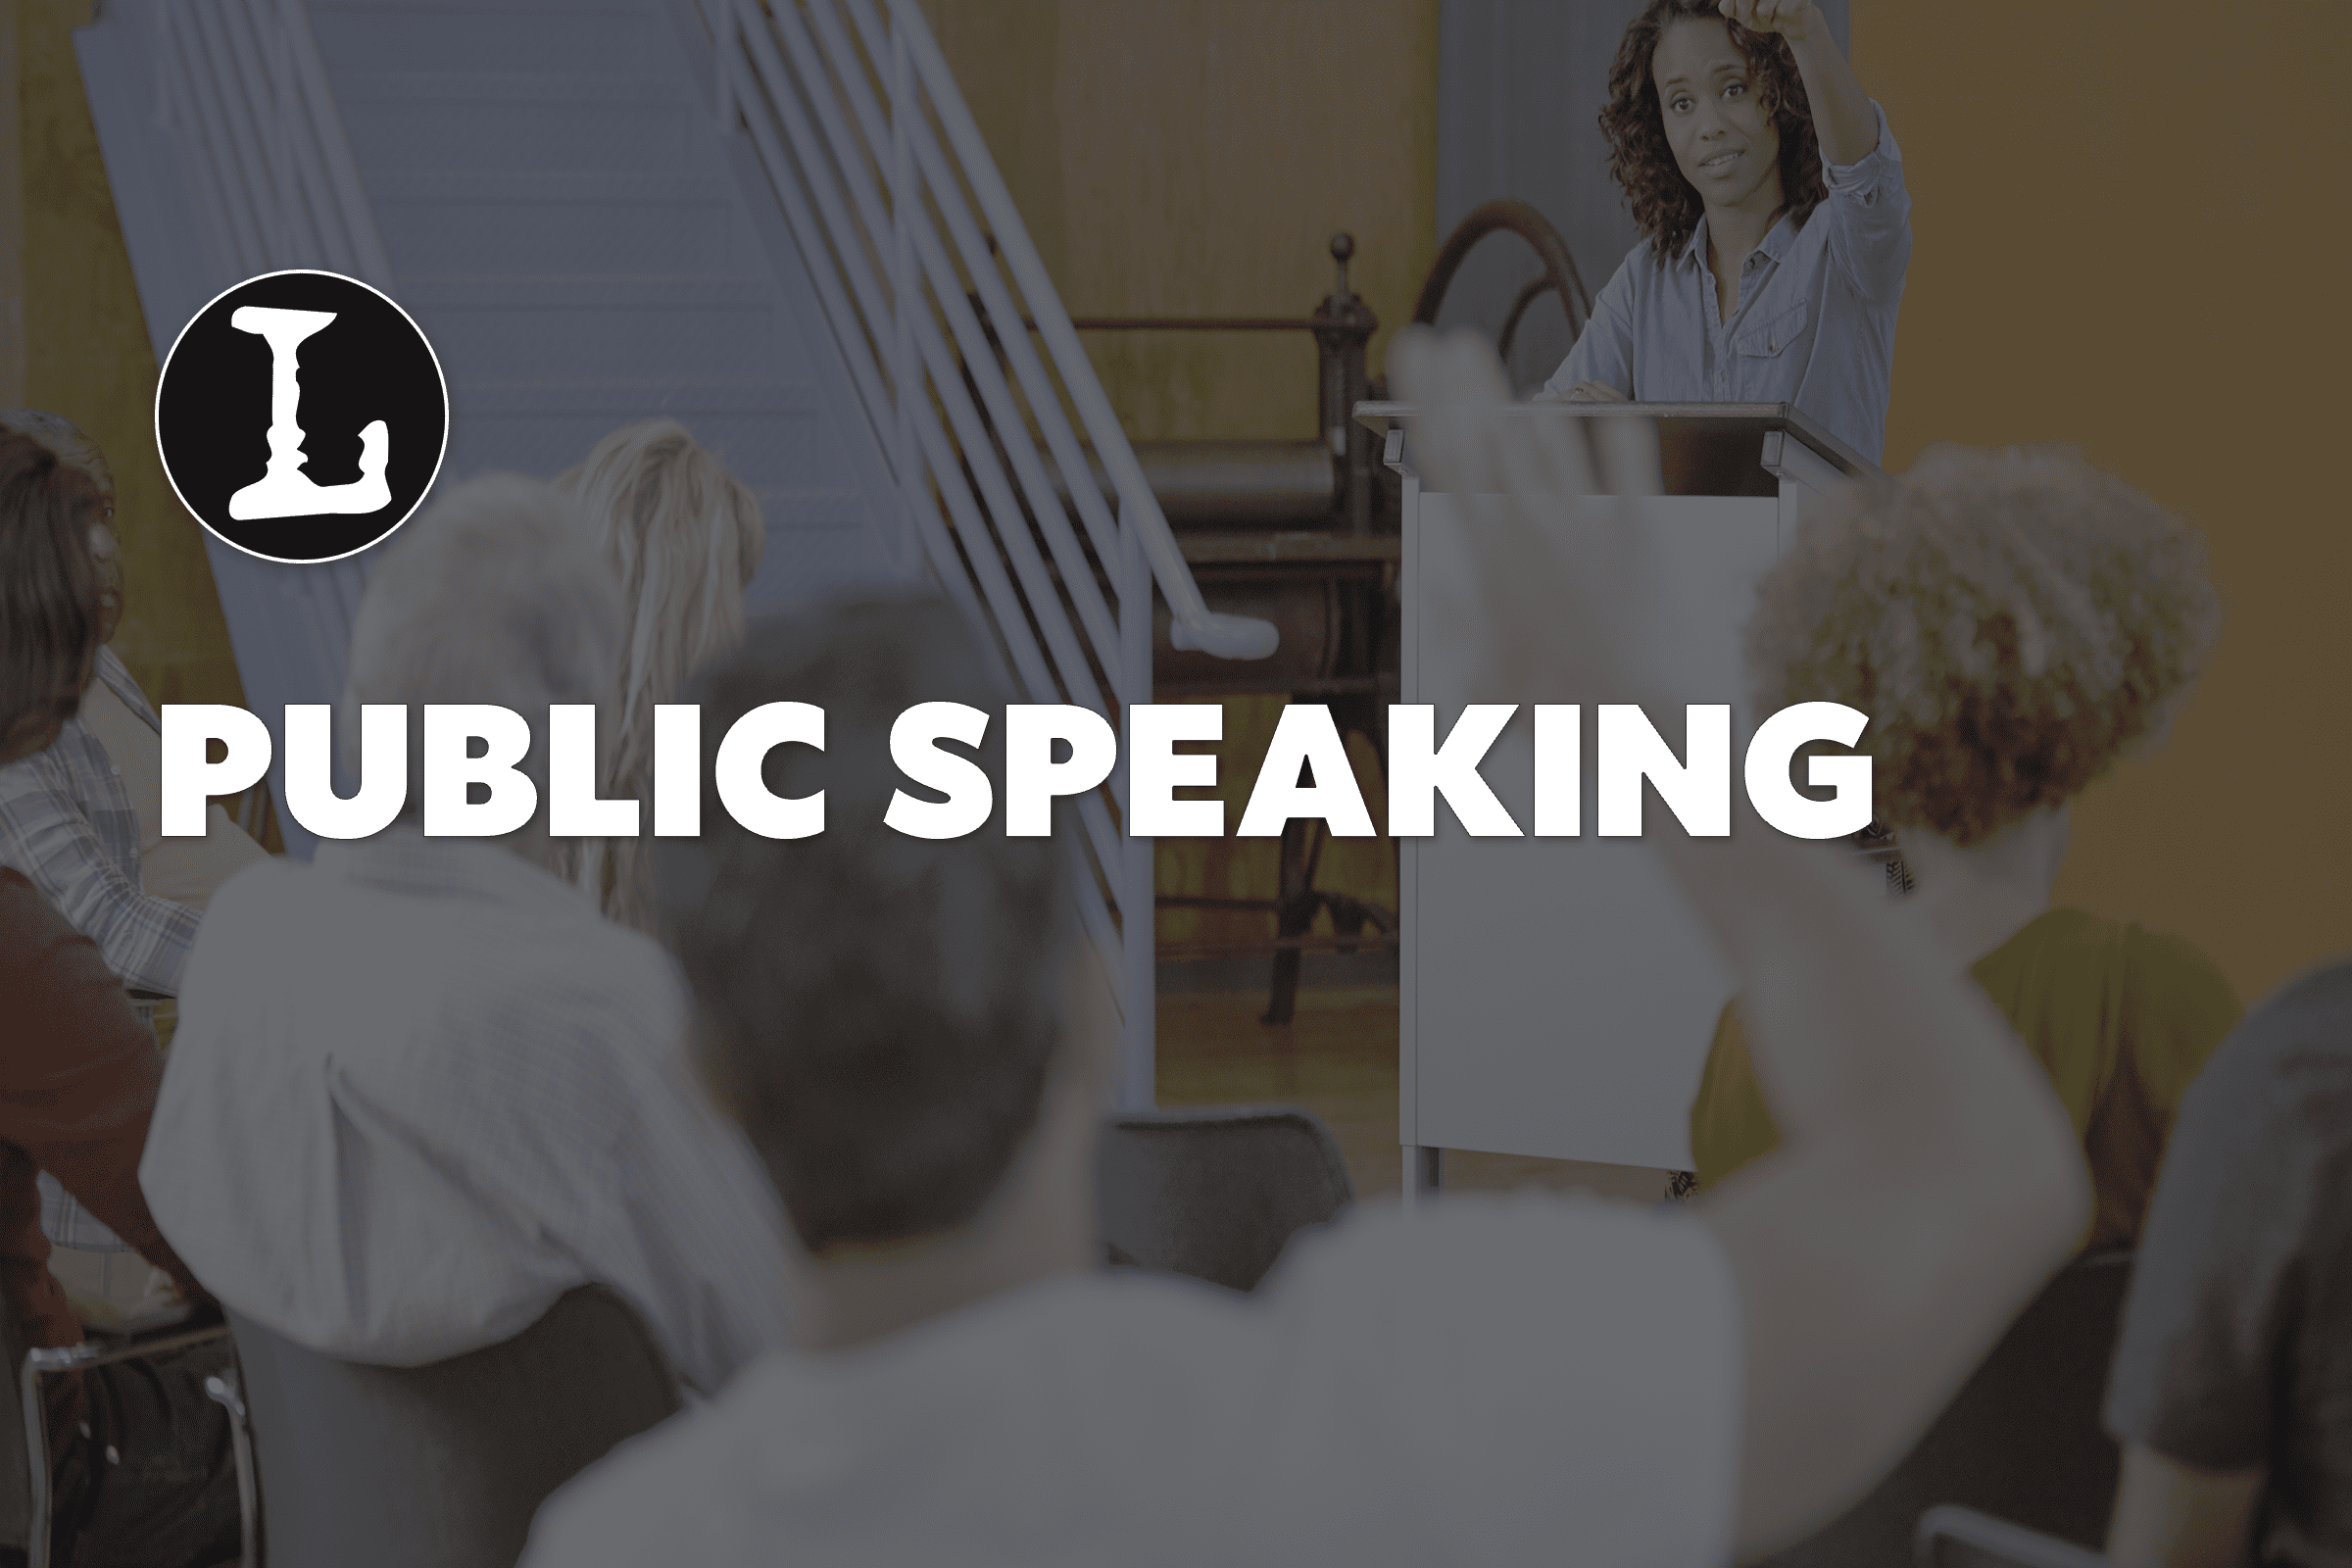 Public Speaking featured image